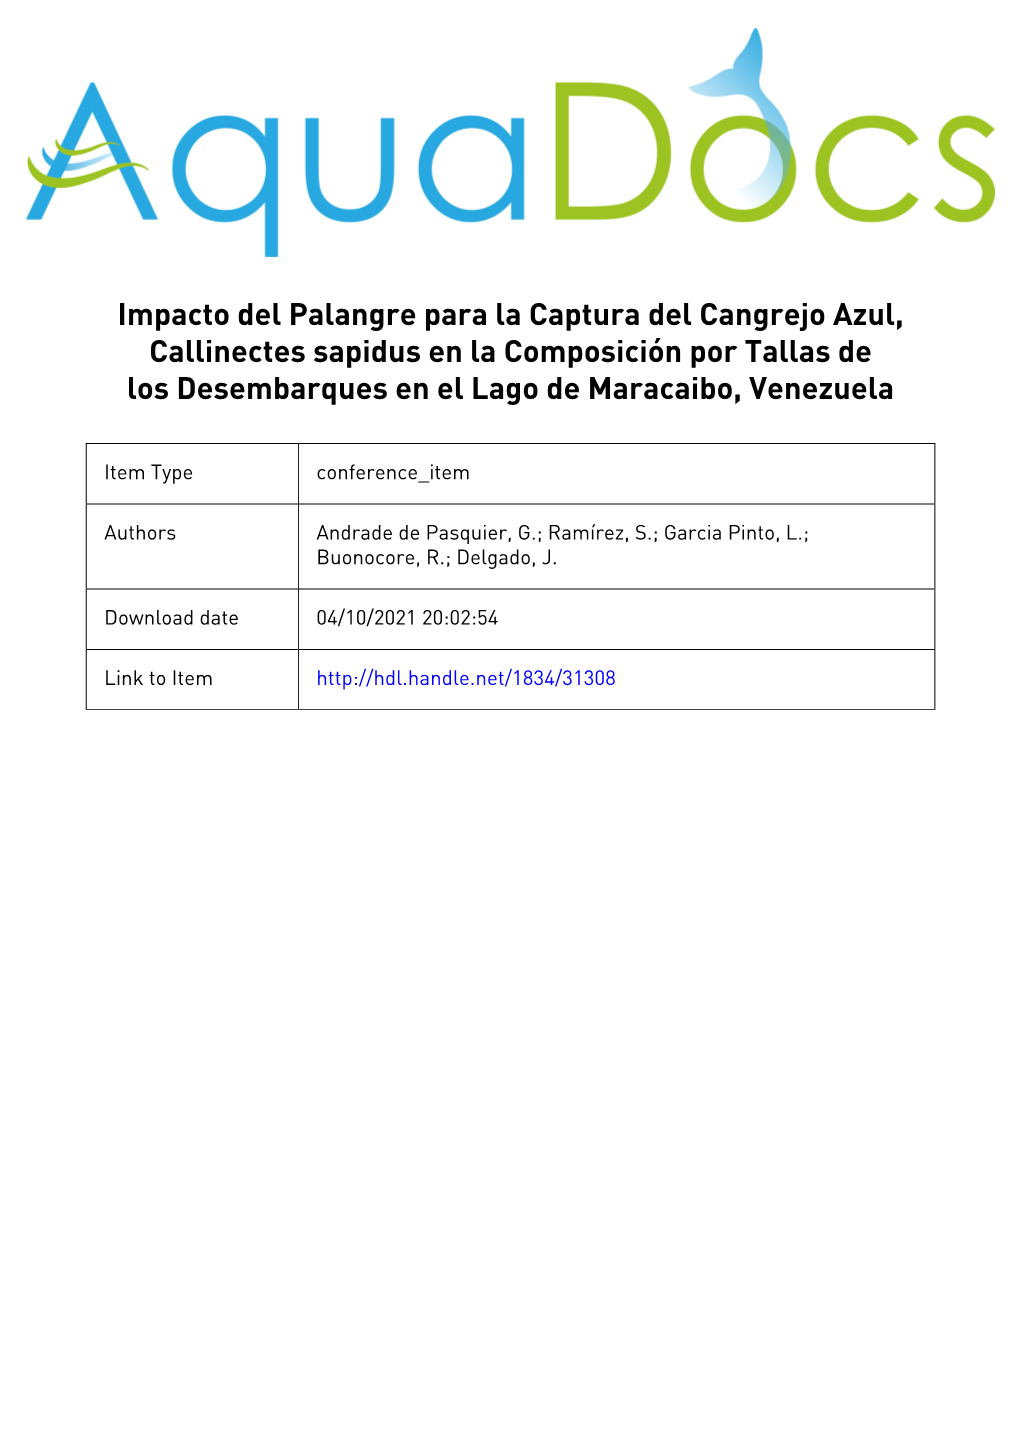 Impacto Del Palangre Para La Captura Del Cangrejo Azul, Callinectes Sapidus En La Composición Por Tallas De Los Desembarques En El Lago De Maracaibo, Venezuela